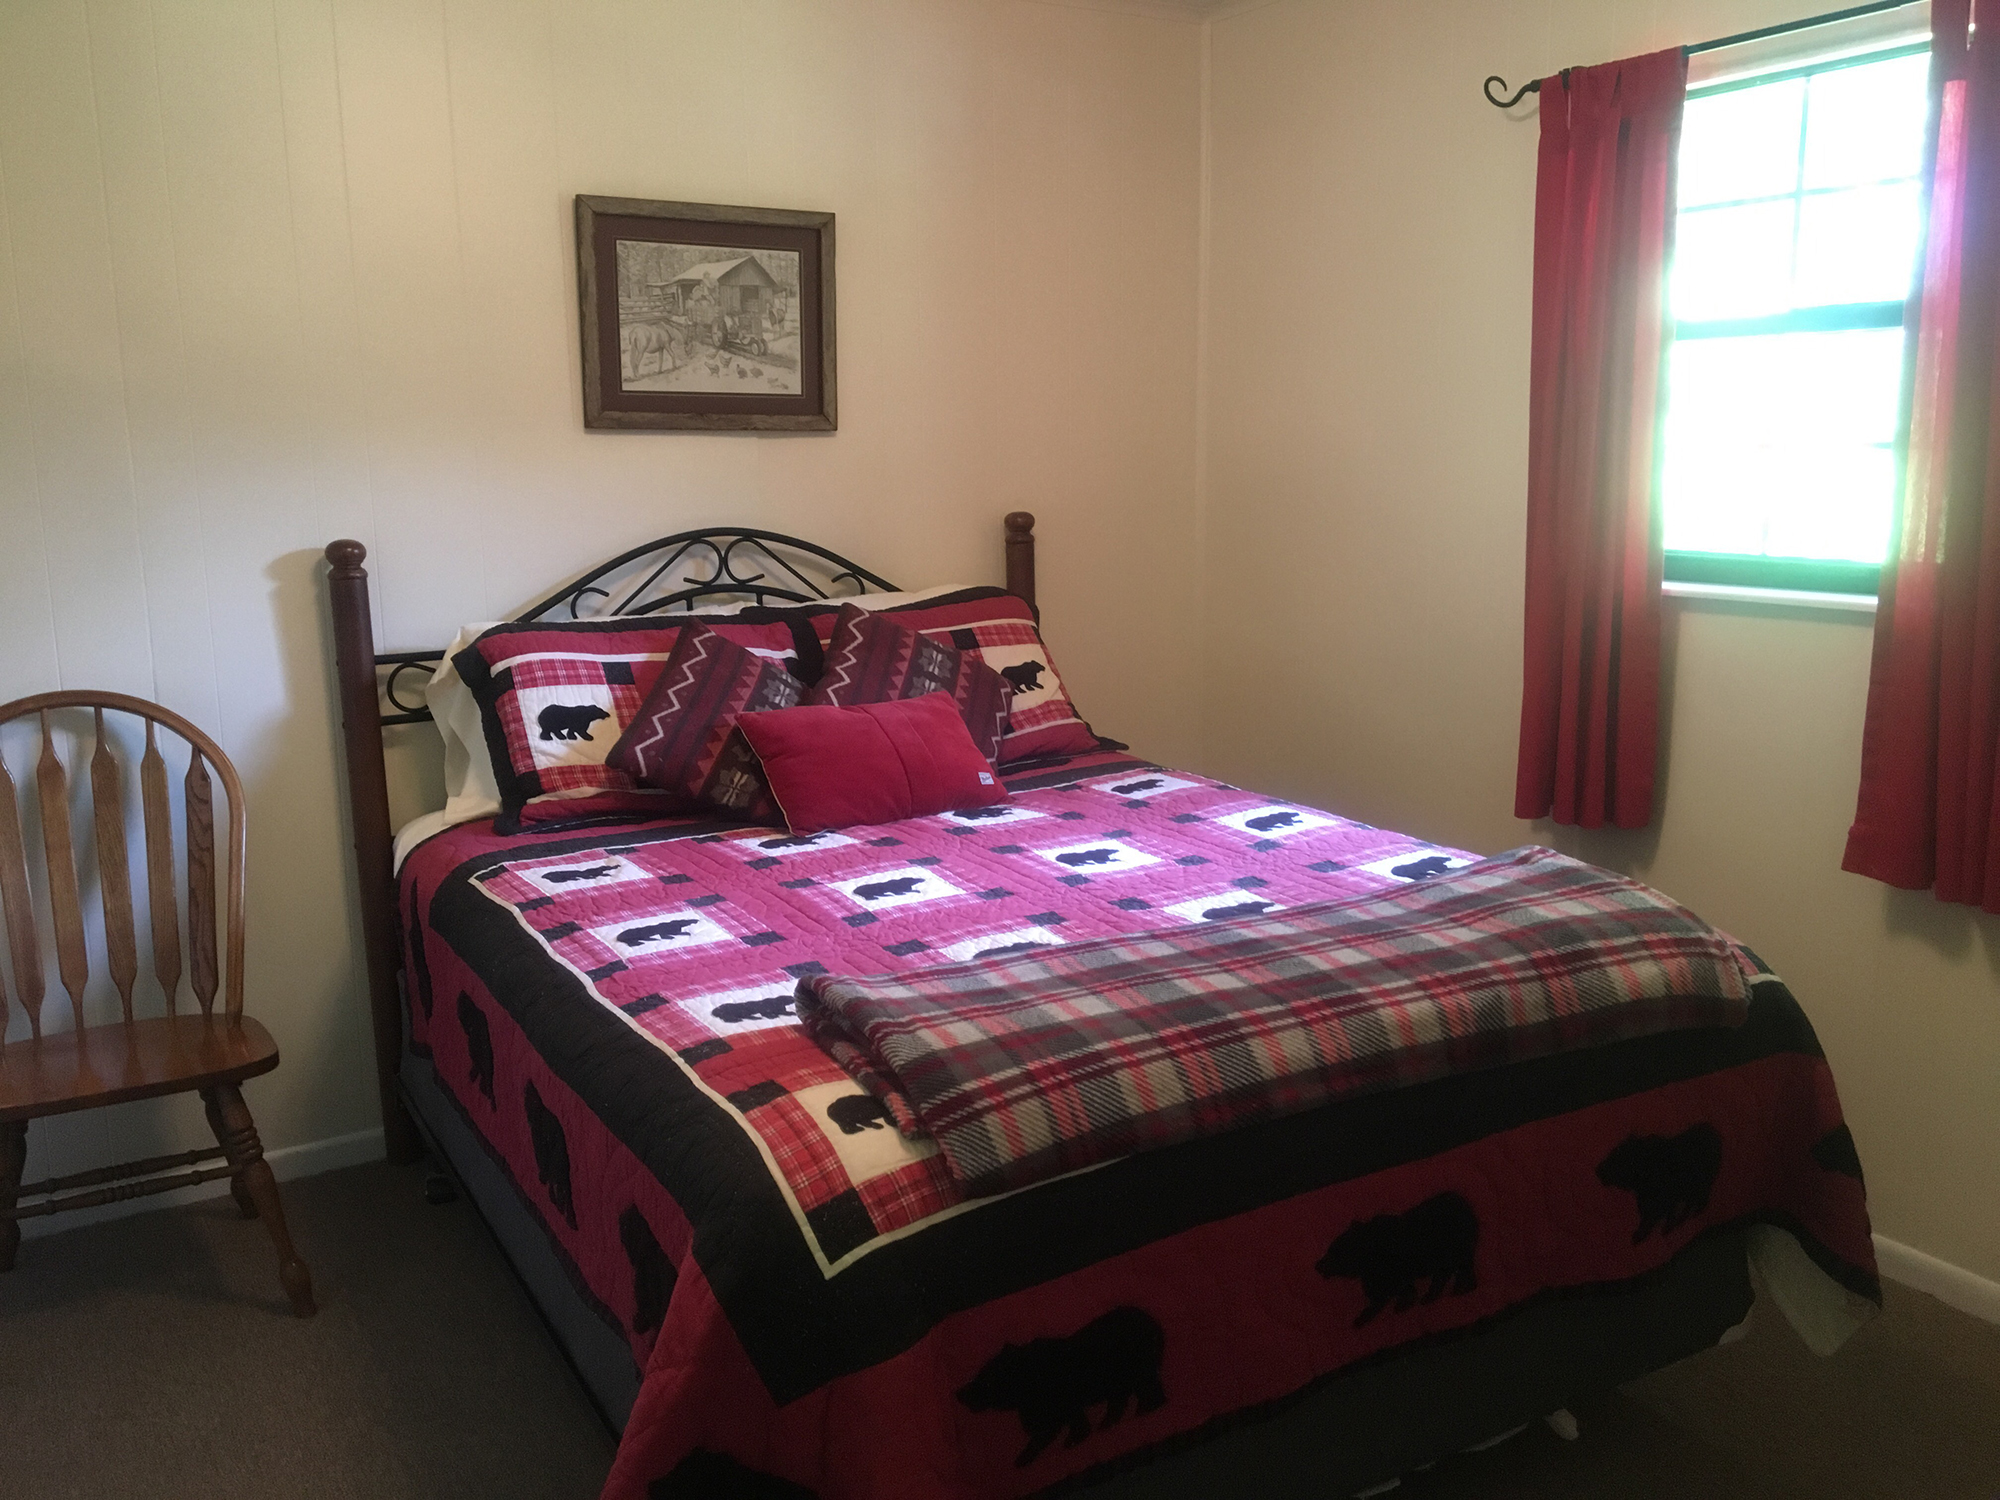 Rancher_Bedroom